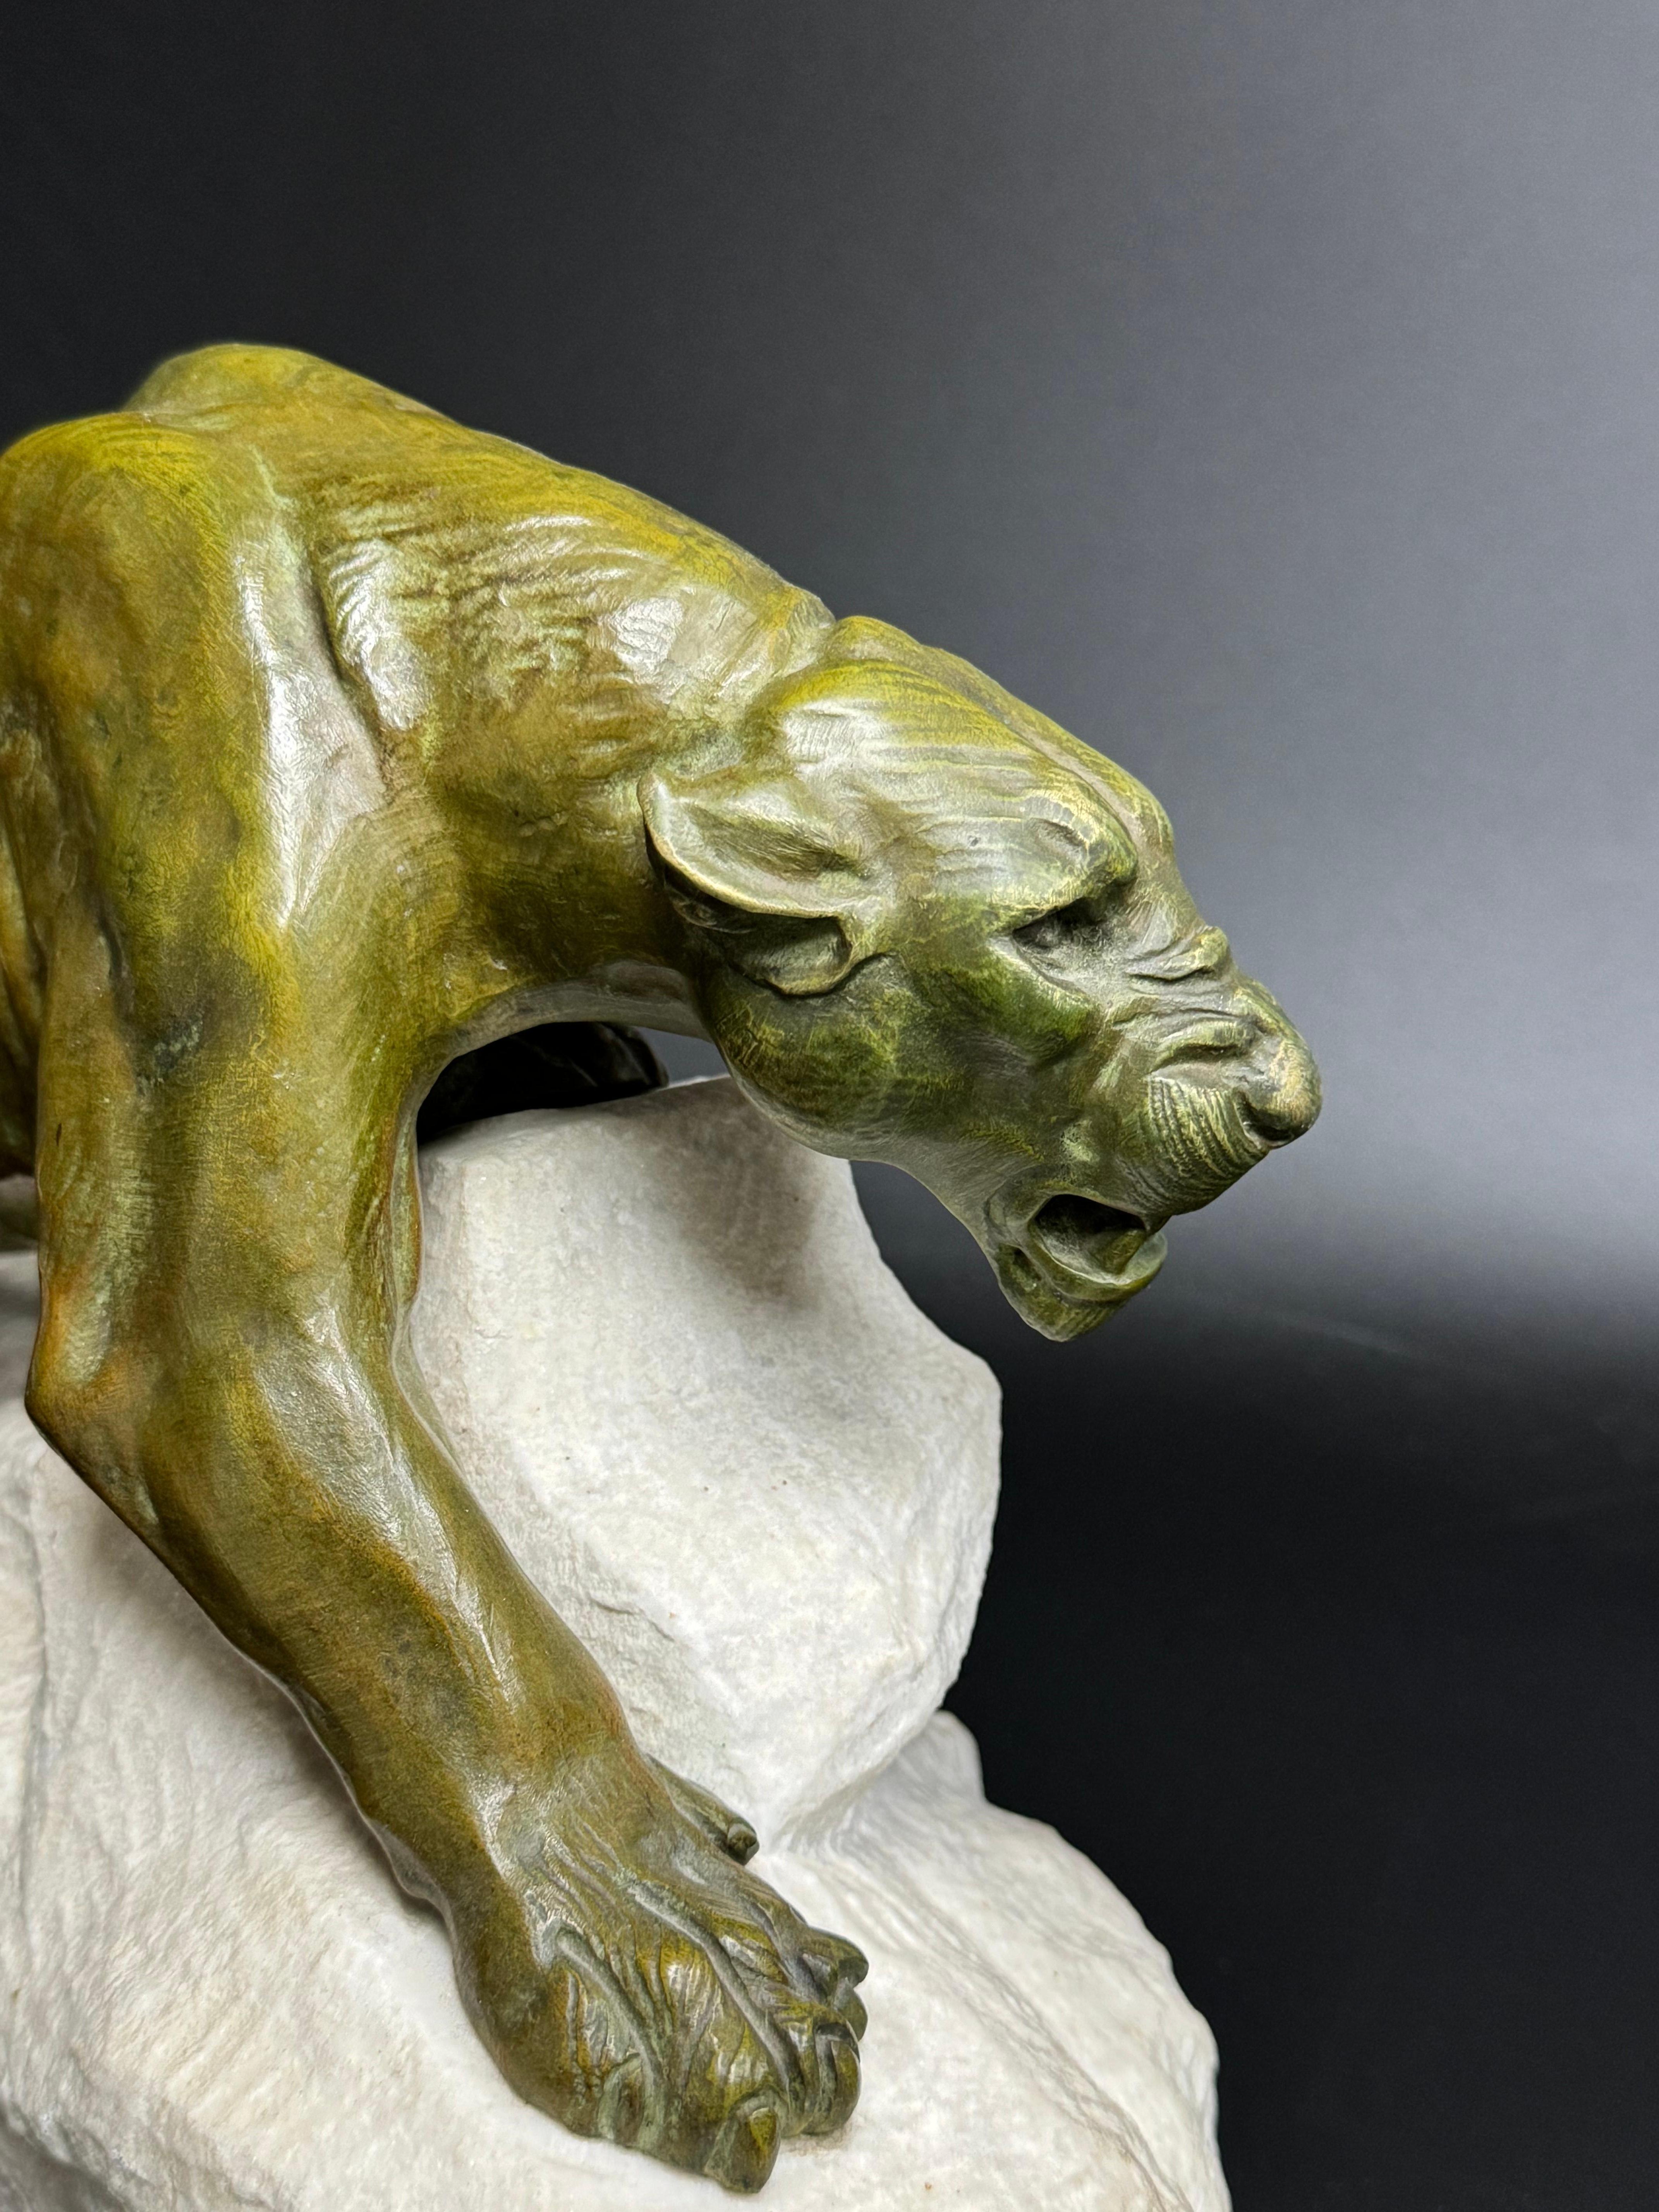 Clovis-Edmond MASSON (1858-1913)
Panthère
Sculpture en bronze ciselé et patiné à nuance verte.
Signé sur la base en marbre blanc
H. 24, L. 43 cm

Clovis-Edmond Masson, né à Paris le 7 mars 1838 et mort en 1913, sculpteur animalier français.

Clovis